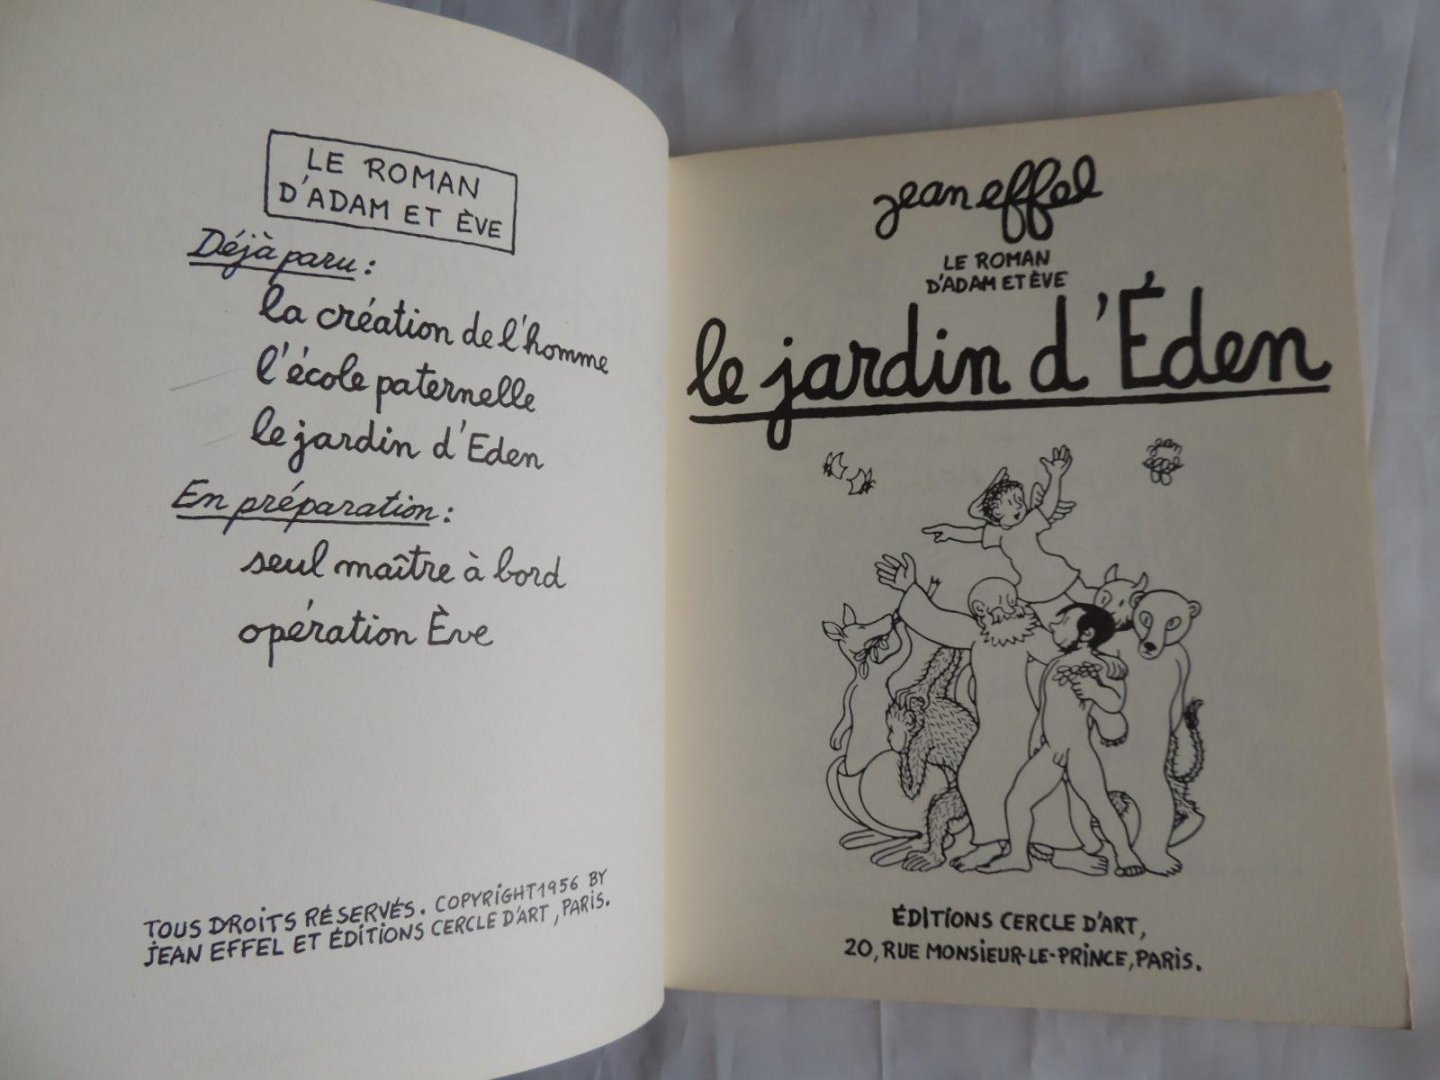 Effel, Jean - Le roman D'Adam et Eve - Seul maître à bord. Le création de l'homme, Le jardin d'Eden, L'école paternelle. Operation Eve.